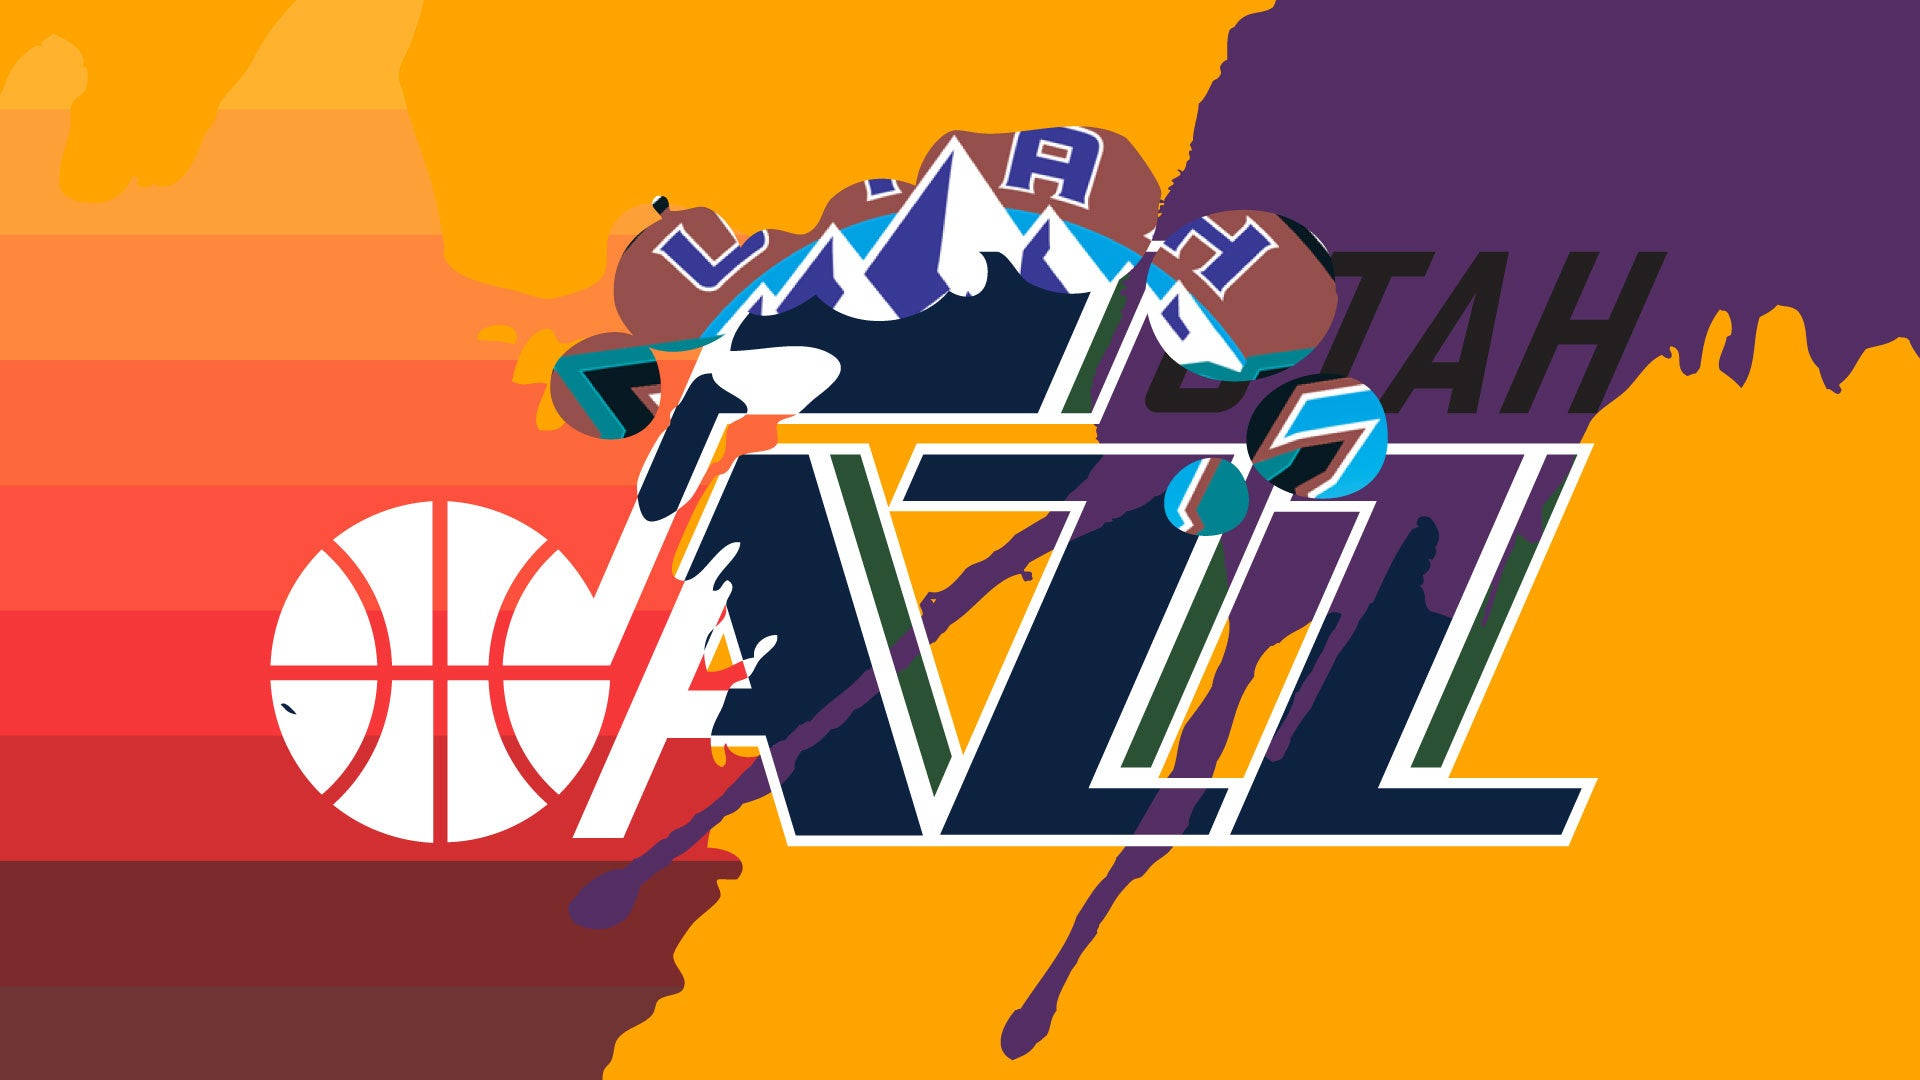 Utah Jazz Digital Artwork Wallpaper